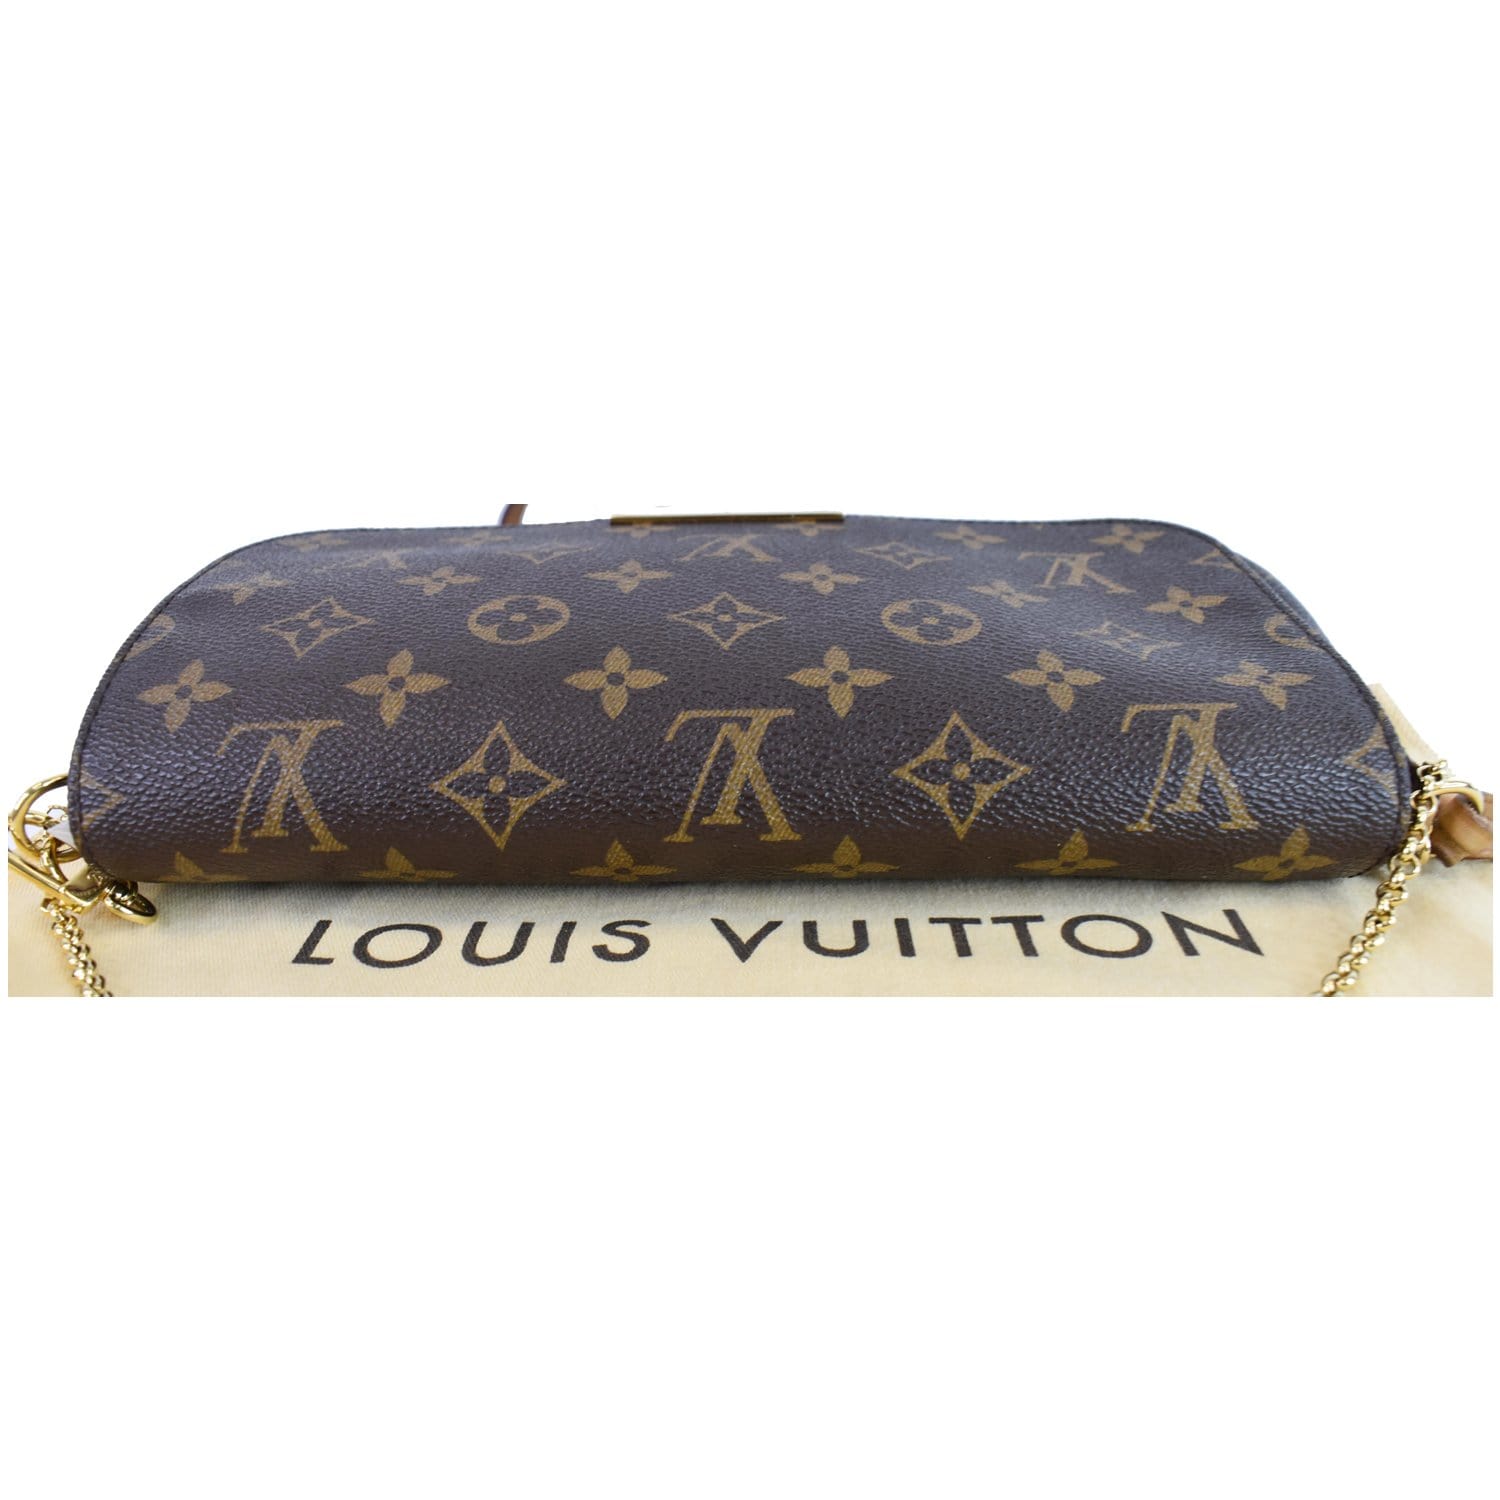 Found a new favorite bag - LV Amfar : r/Louisvuitton